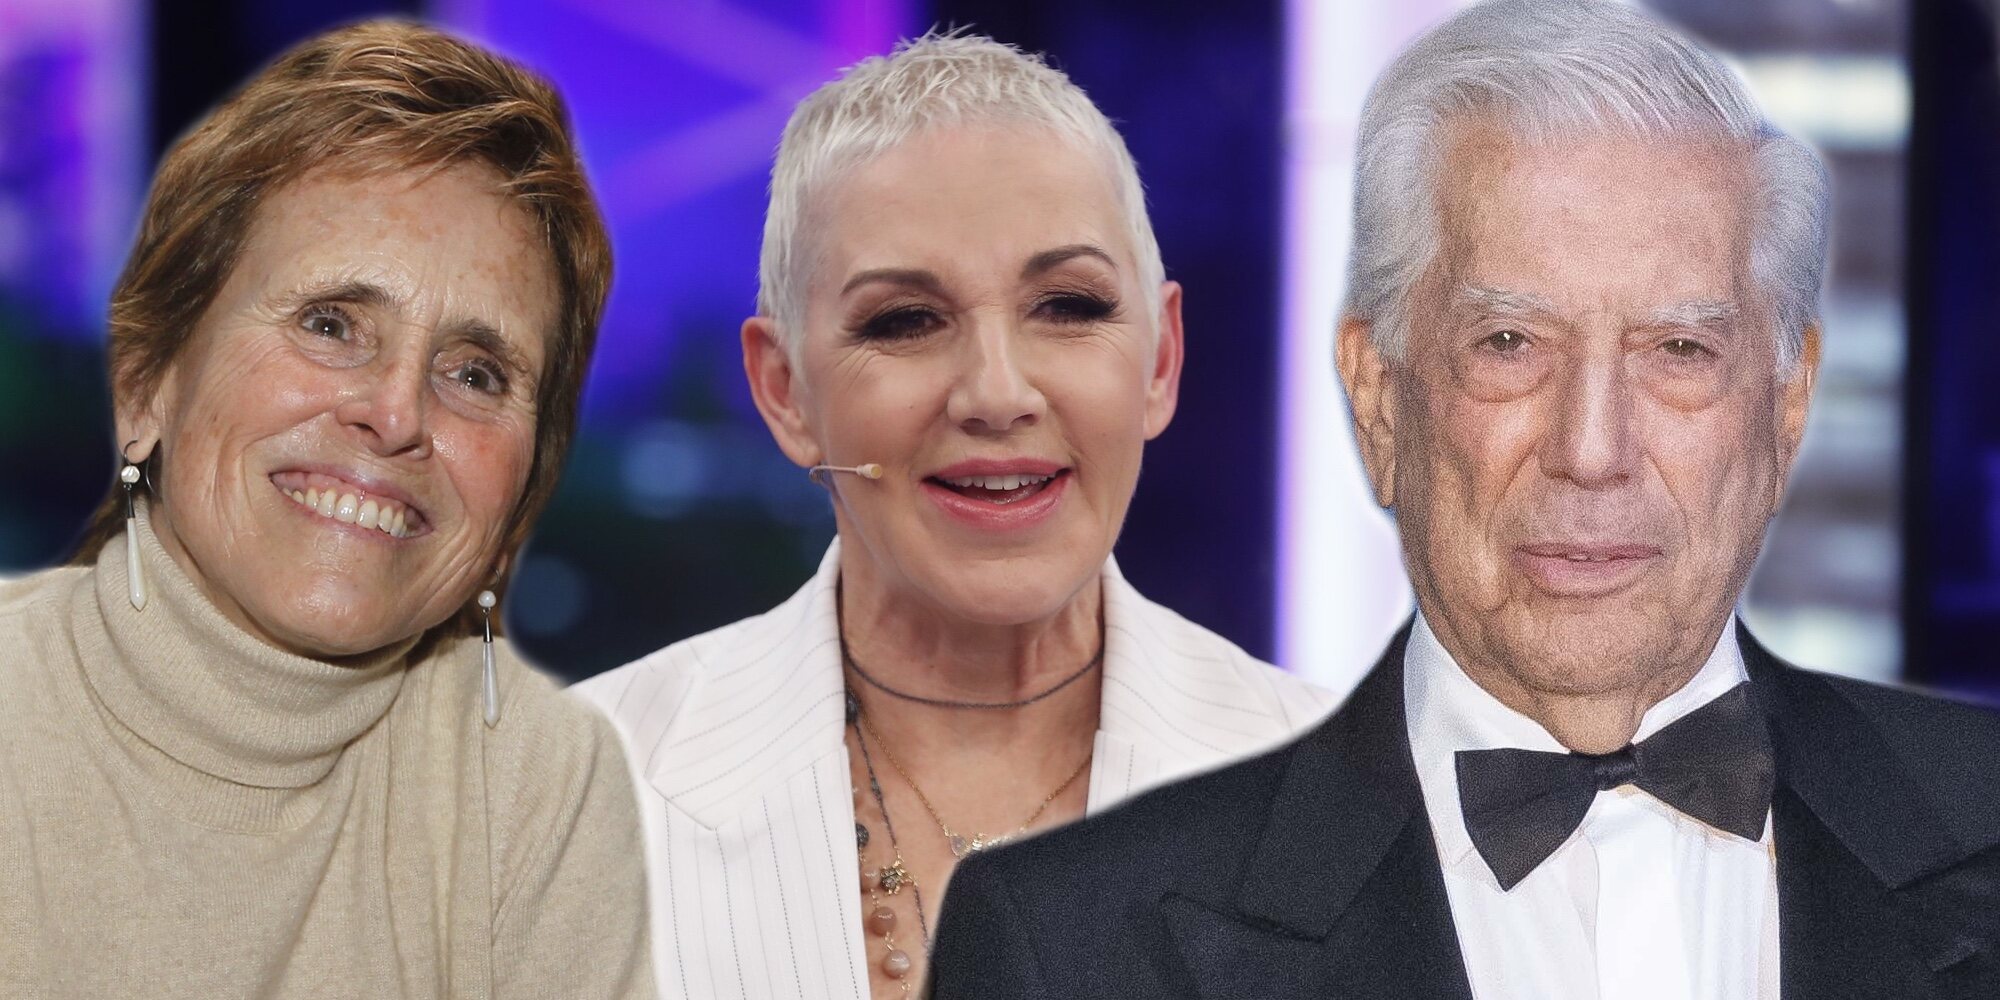 Mercedes Milá, Mario Vargas Llosa y otras personas que forman parte de la aristocracia